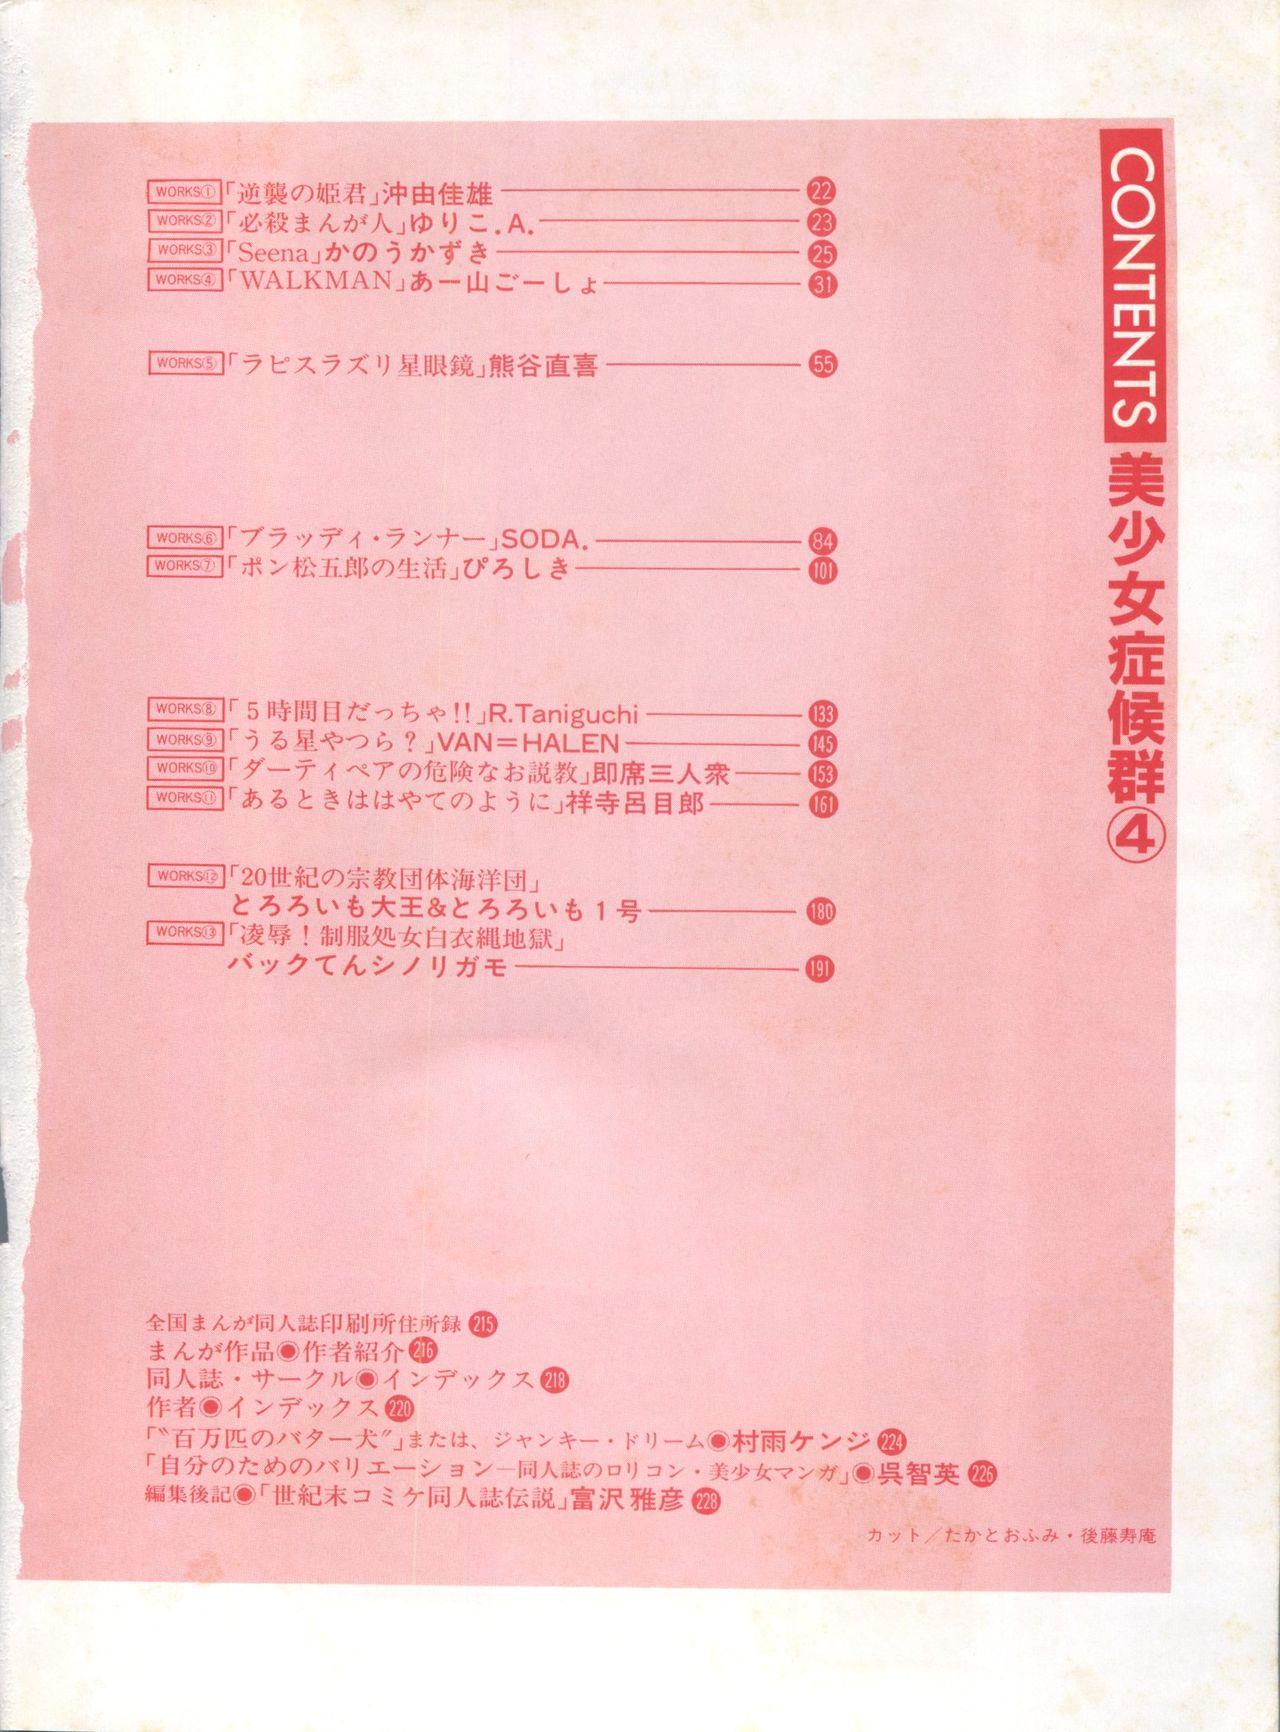 Bishoujo Shoukougun Lolita Syndrome 4 8